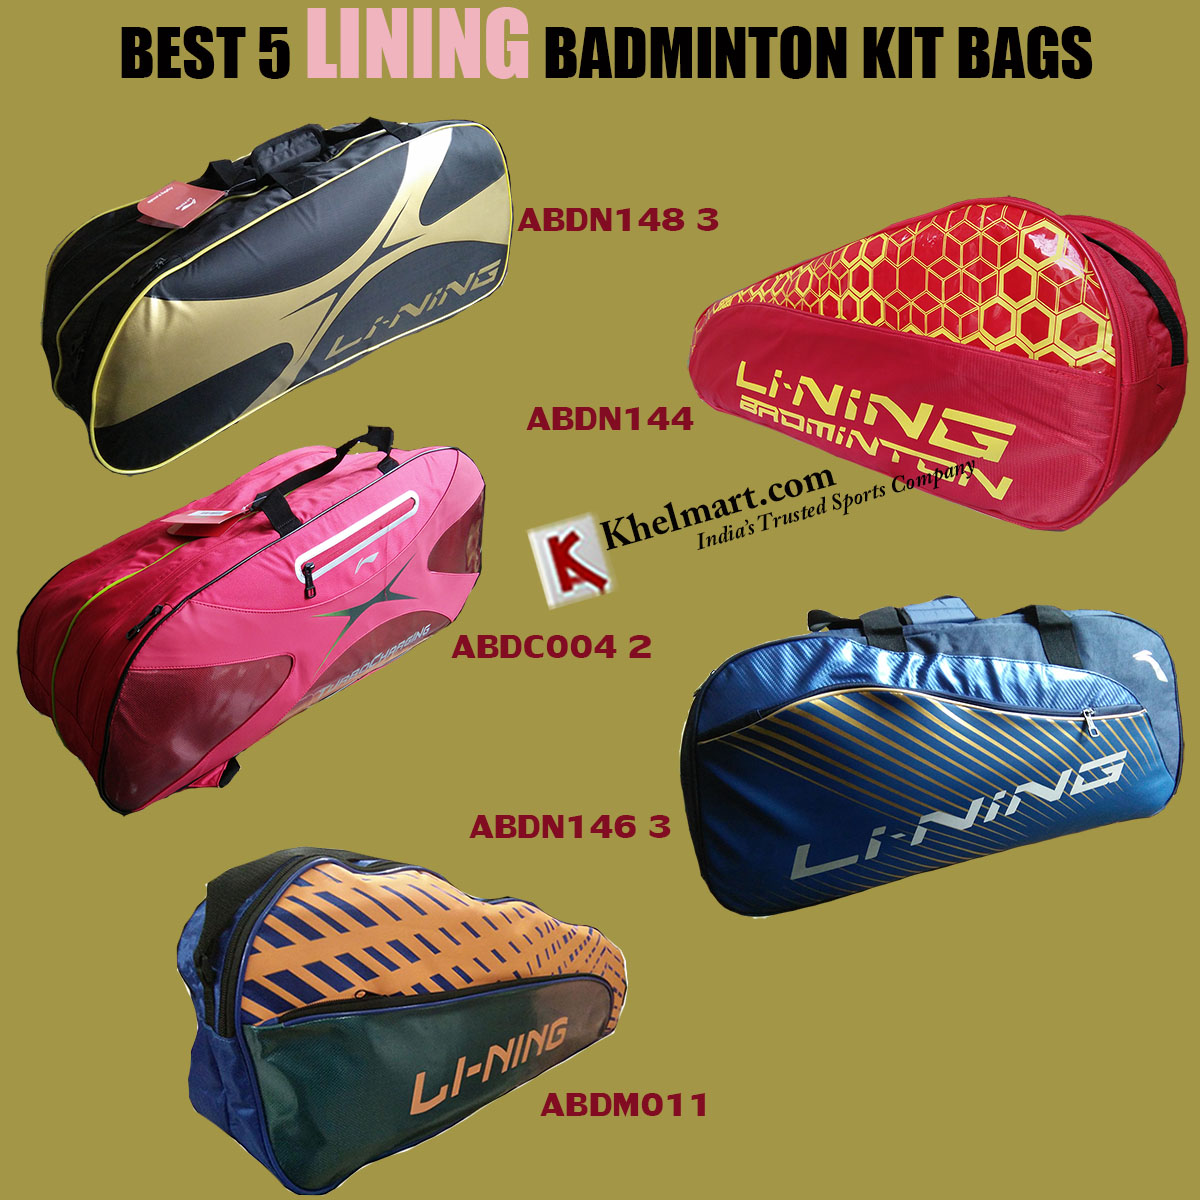 Best_5_Lining_badminton_kit_bags.jpg